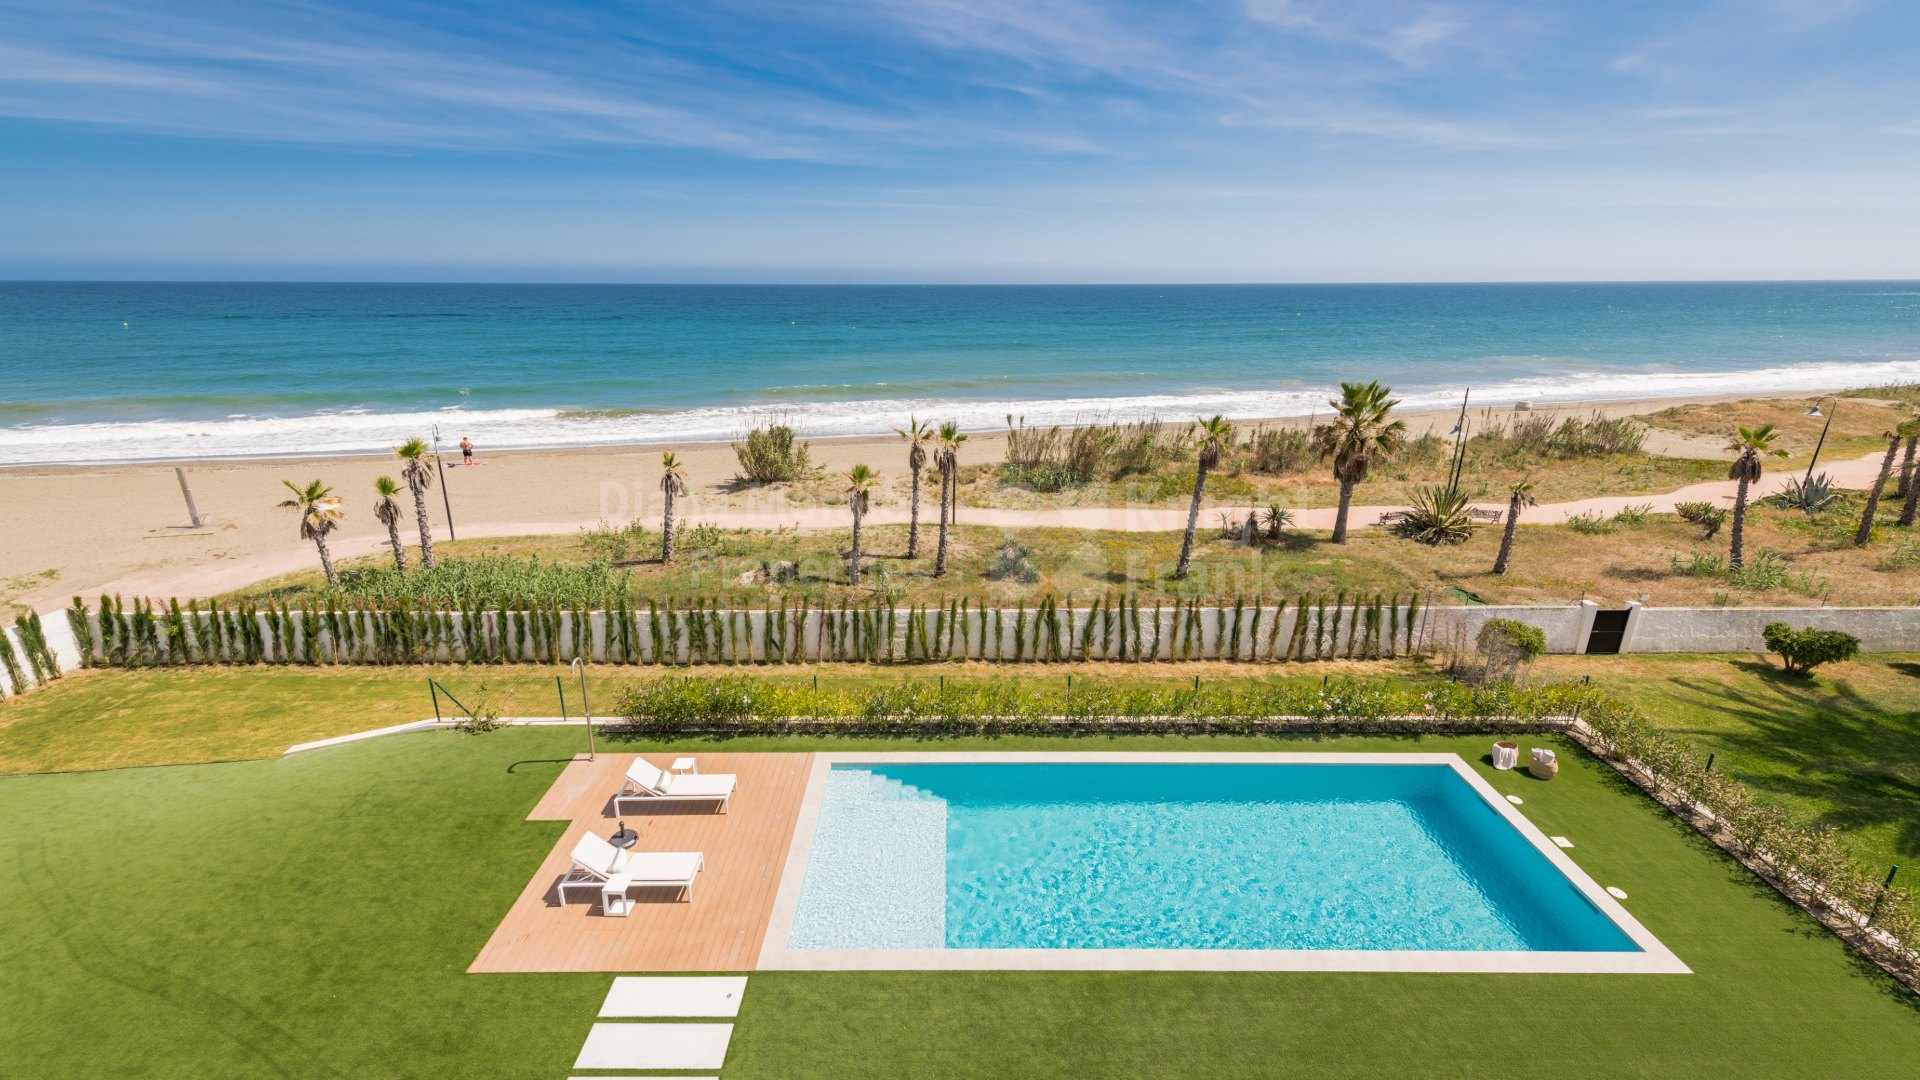 El Saladillo, Villa de alta calidad en primera línea de playa